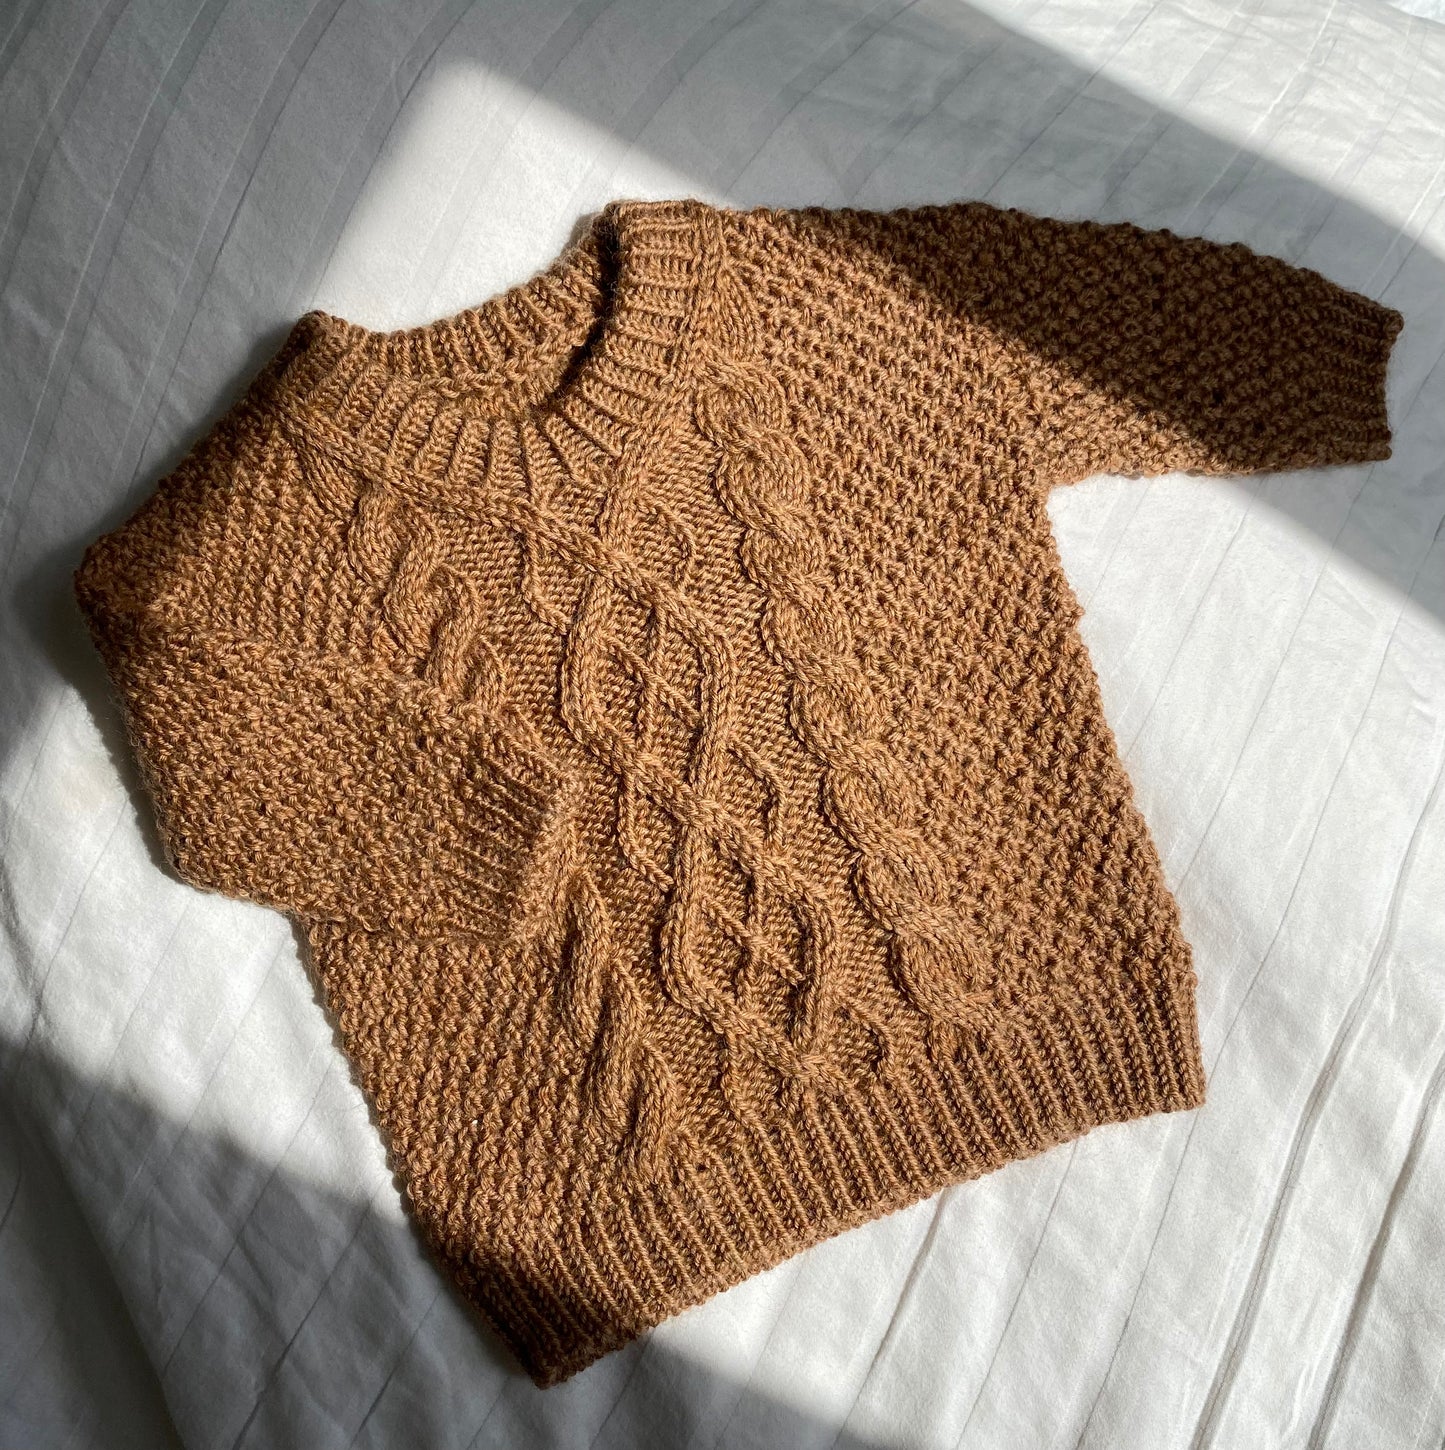 Swirl Sweater Baby - Dansk